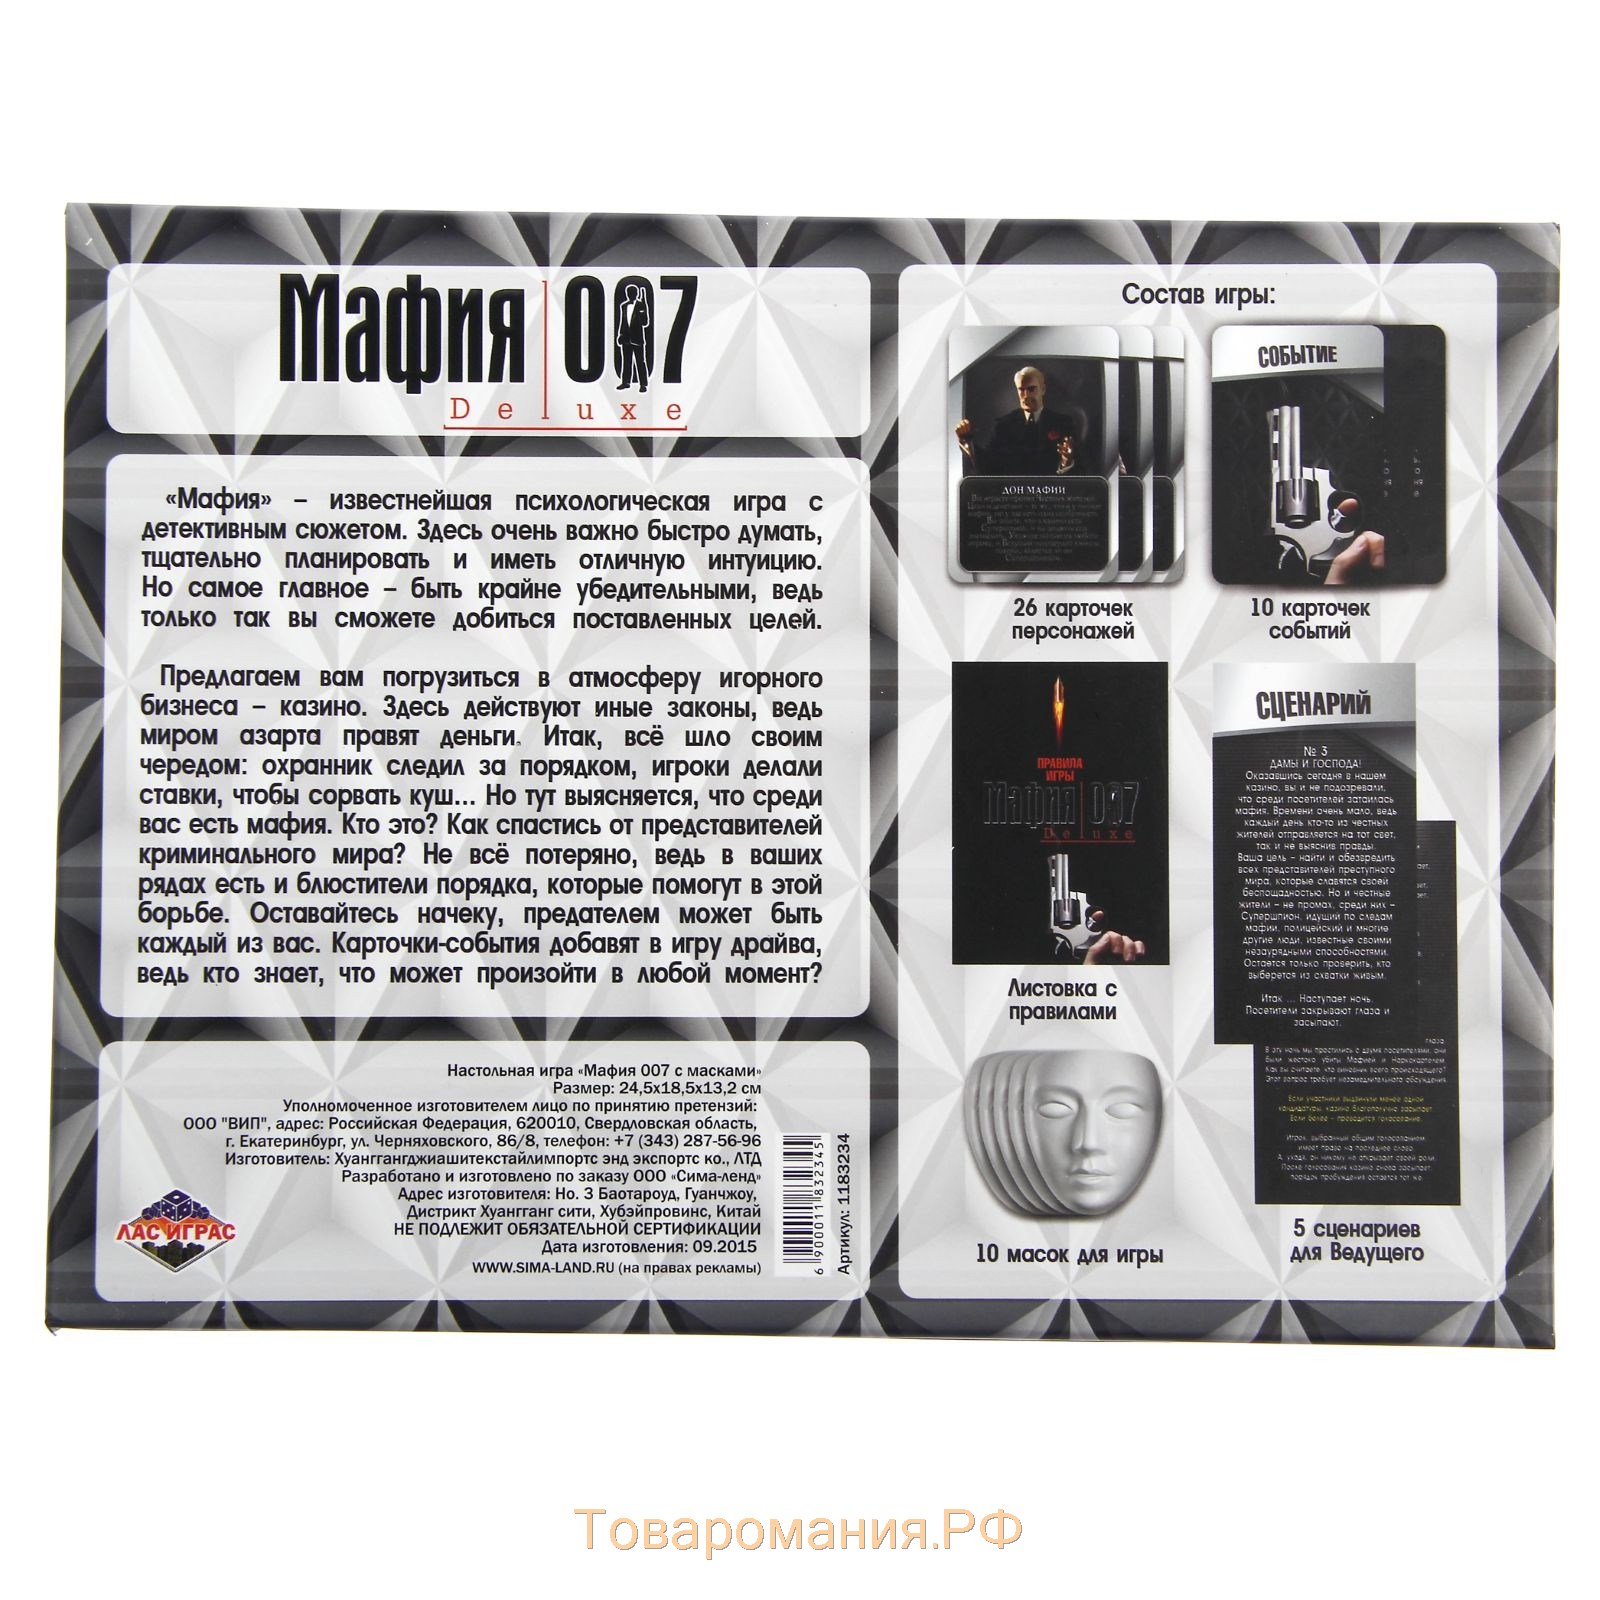 Настольная ролевая игра «Мафия 007» с масками, 36 карт, 18+